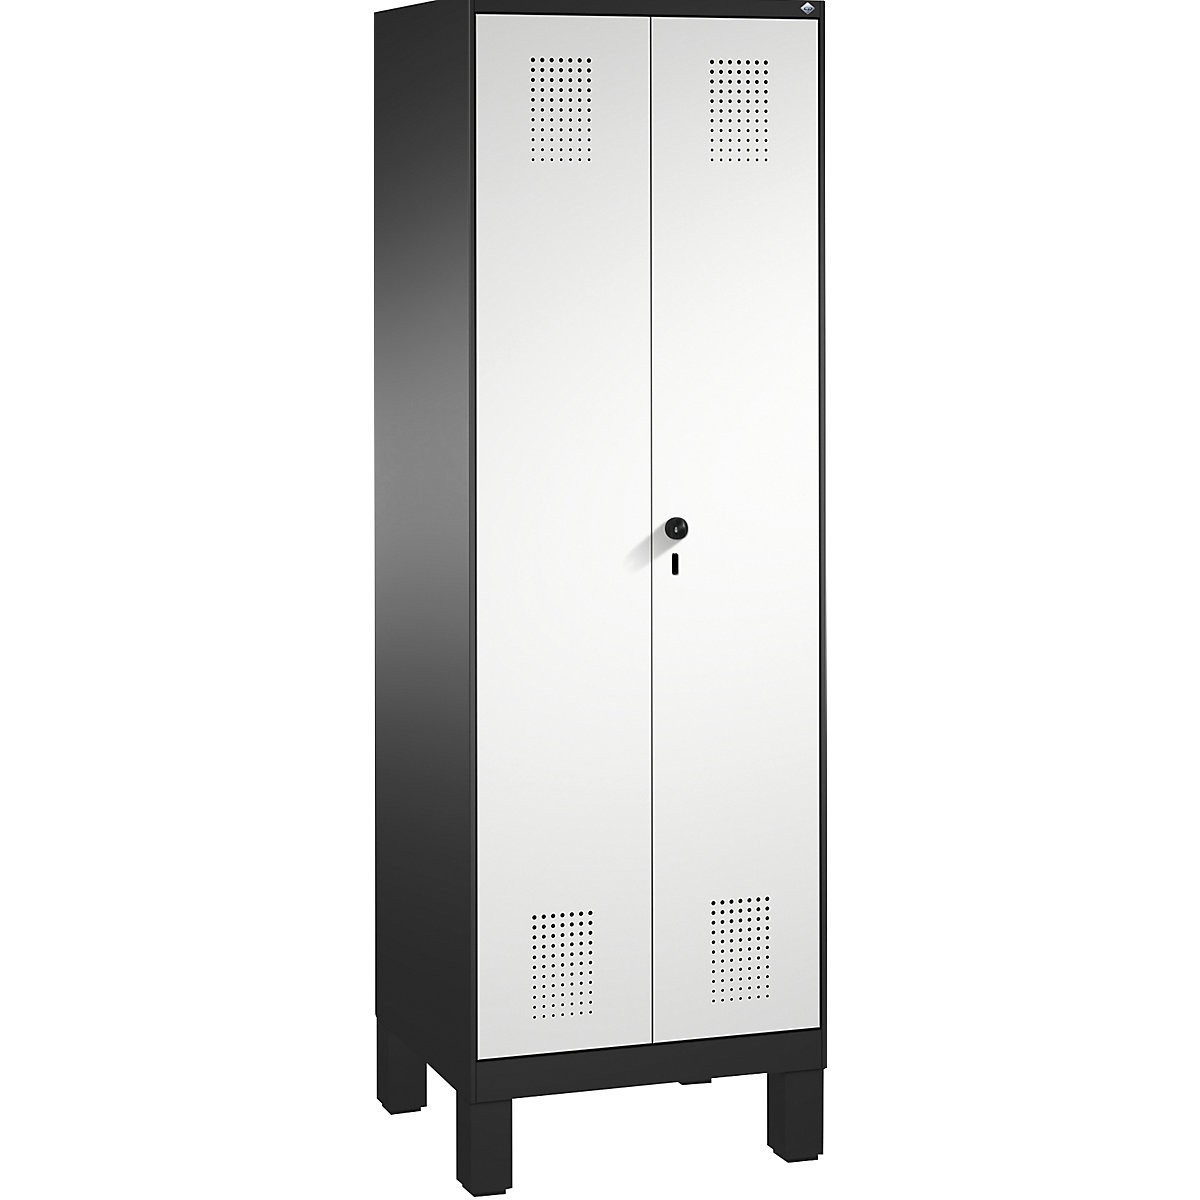 EVOLO takarítószer-/készüléktároló szekrény – C+P, rövidített válaszfal, 6 akasztó, rekeszek 2 x 300 mm, lábakkal, feketésszürke / világosszürke-7